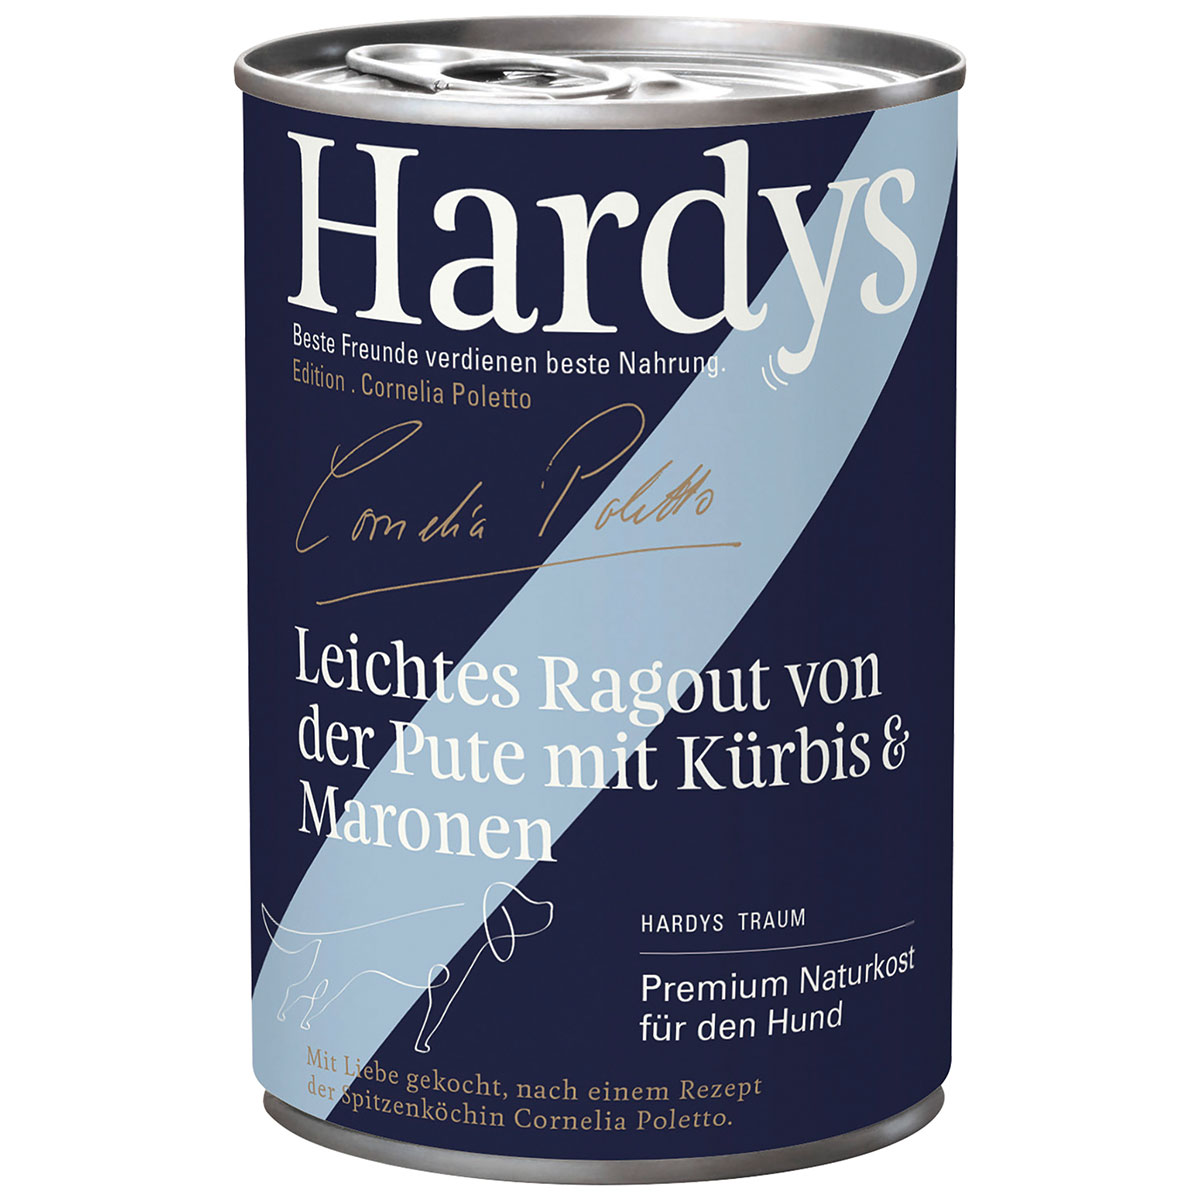 Hardys Ed. Cornelia Poletto Leichtes Ragout von der Pute mit Kürbis & Maronen 6x400g von Hardys